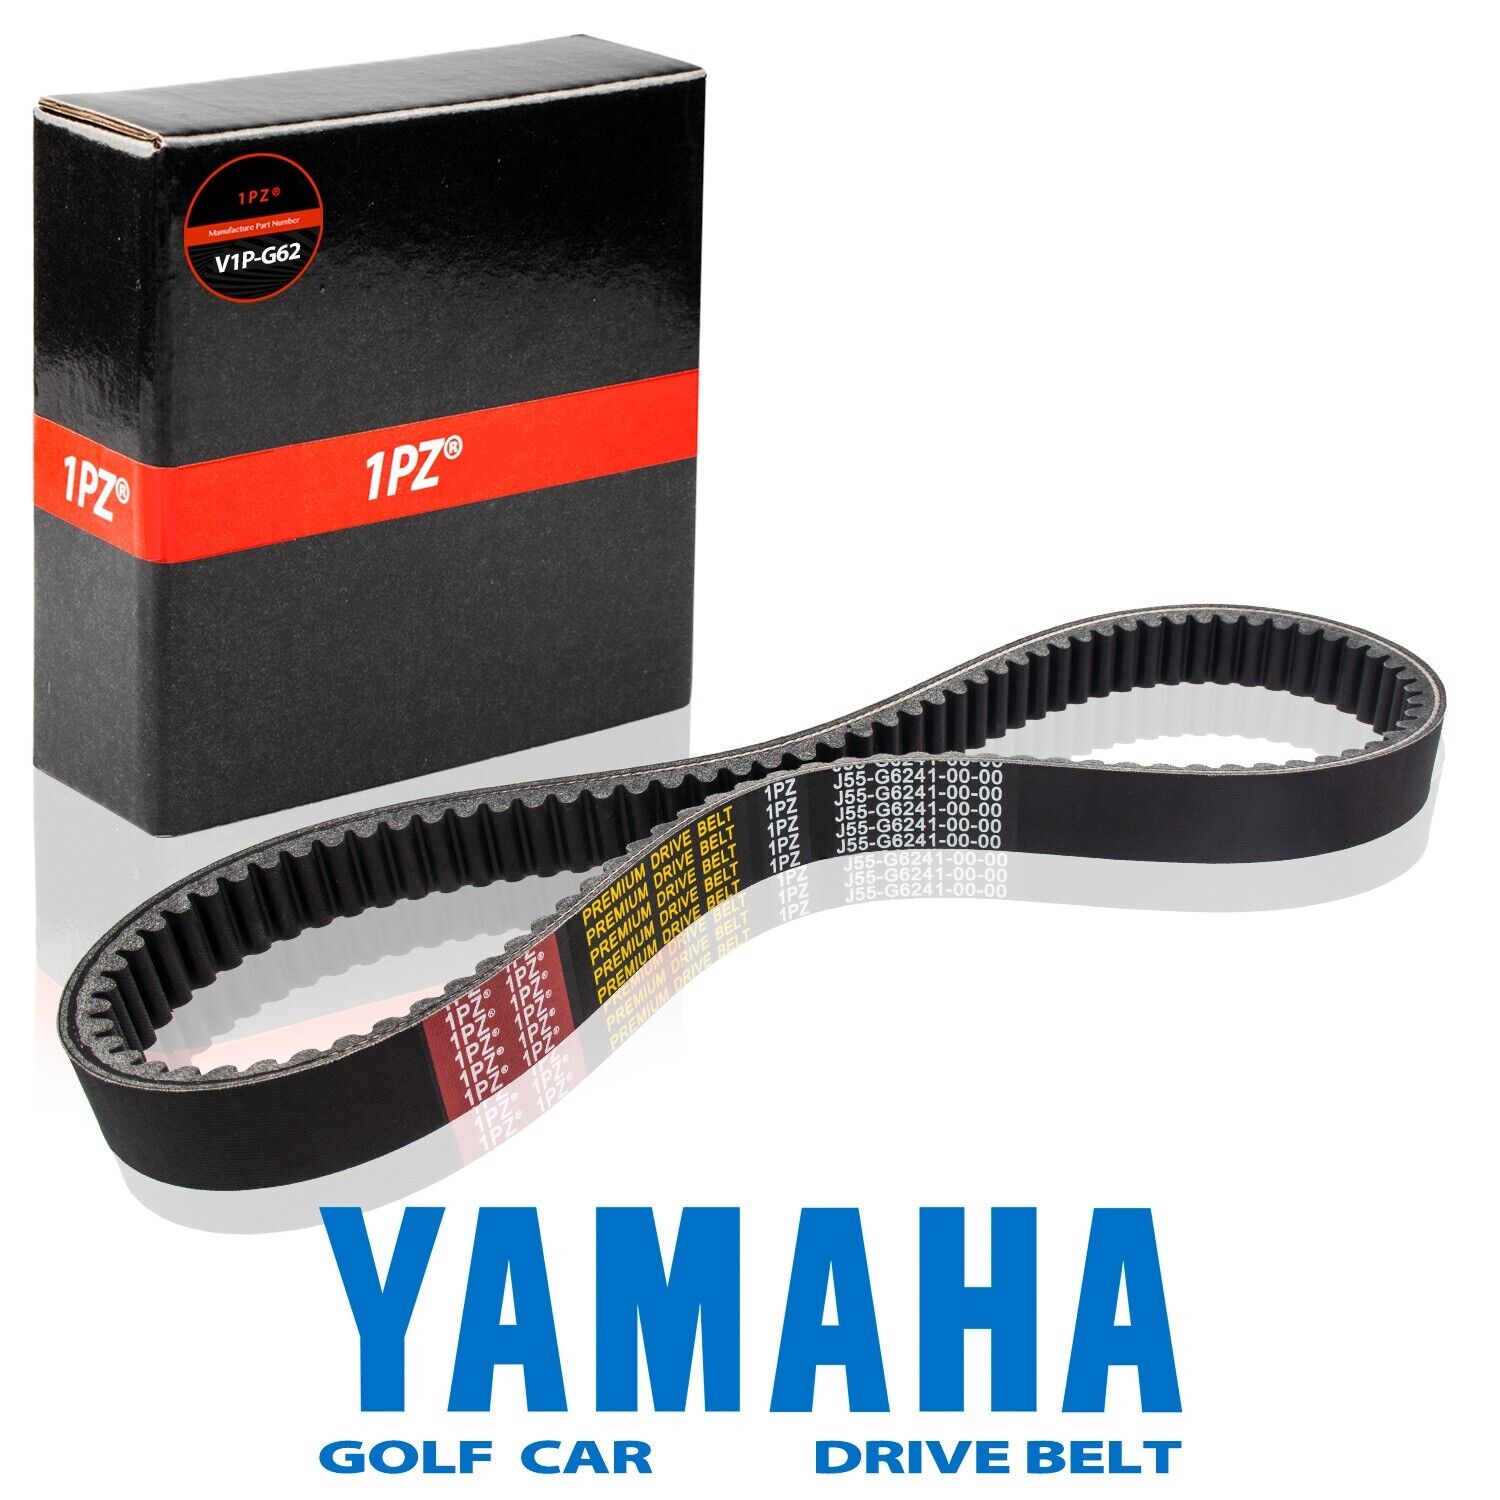 Drive Belt Yamaha G2 G5 G8 G9 G11 G14 G16 G20 G21 Golf Cart OEM J55-G6241-00-00